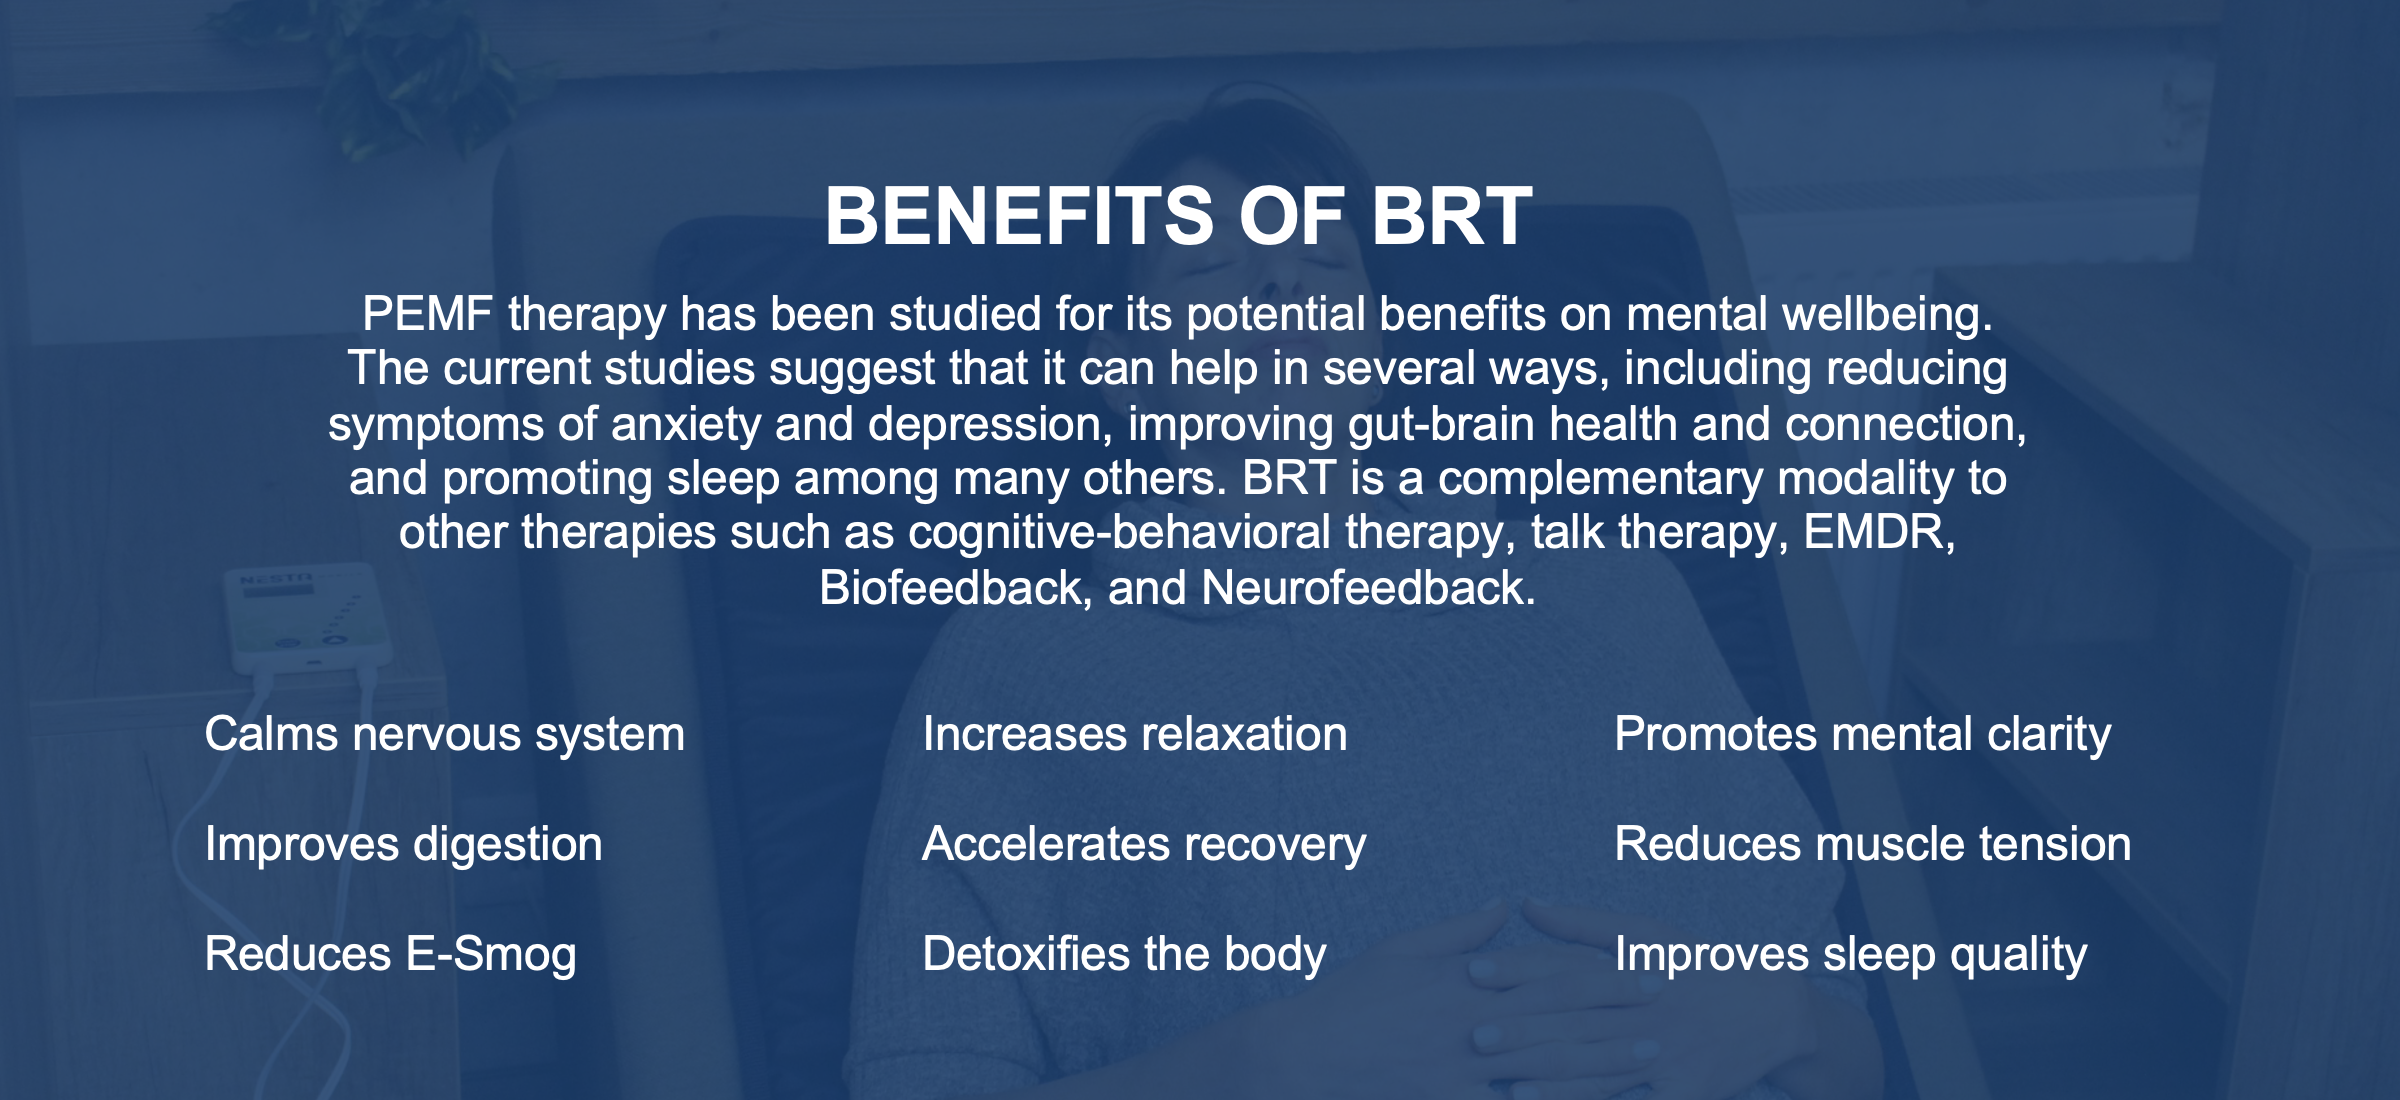 Benefits of BRT